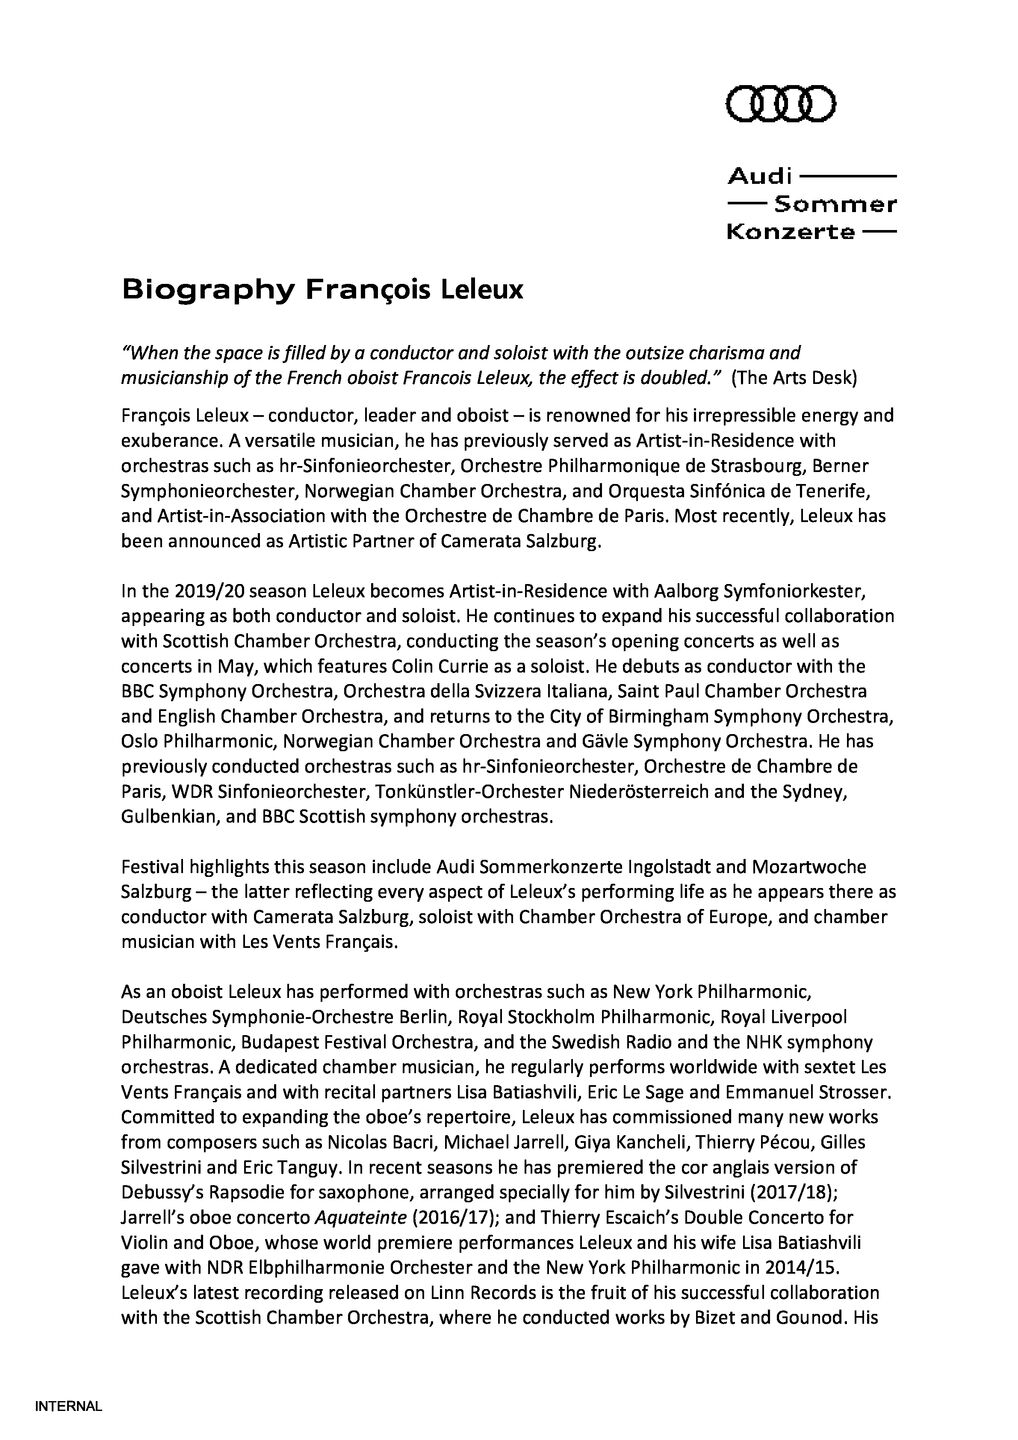 Biography François Leleux